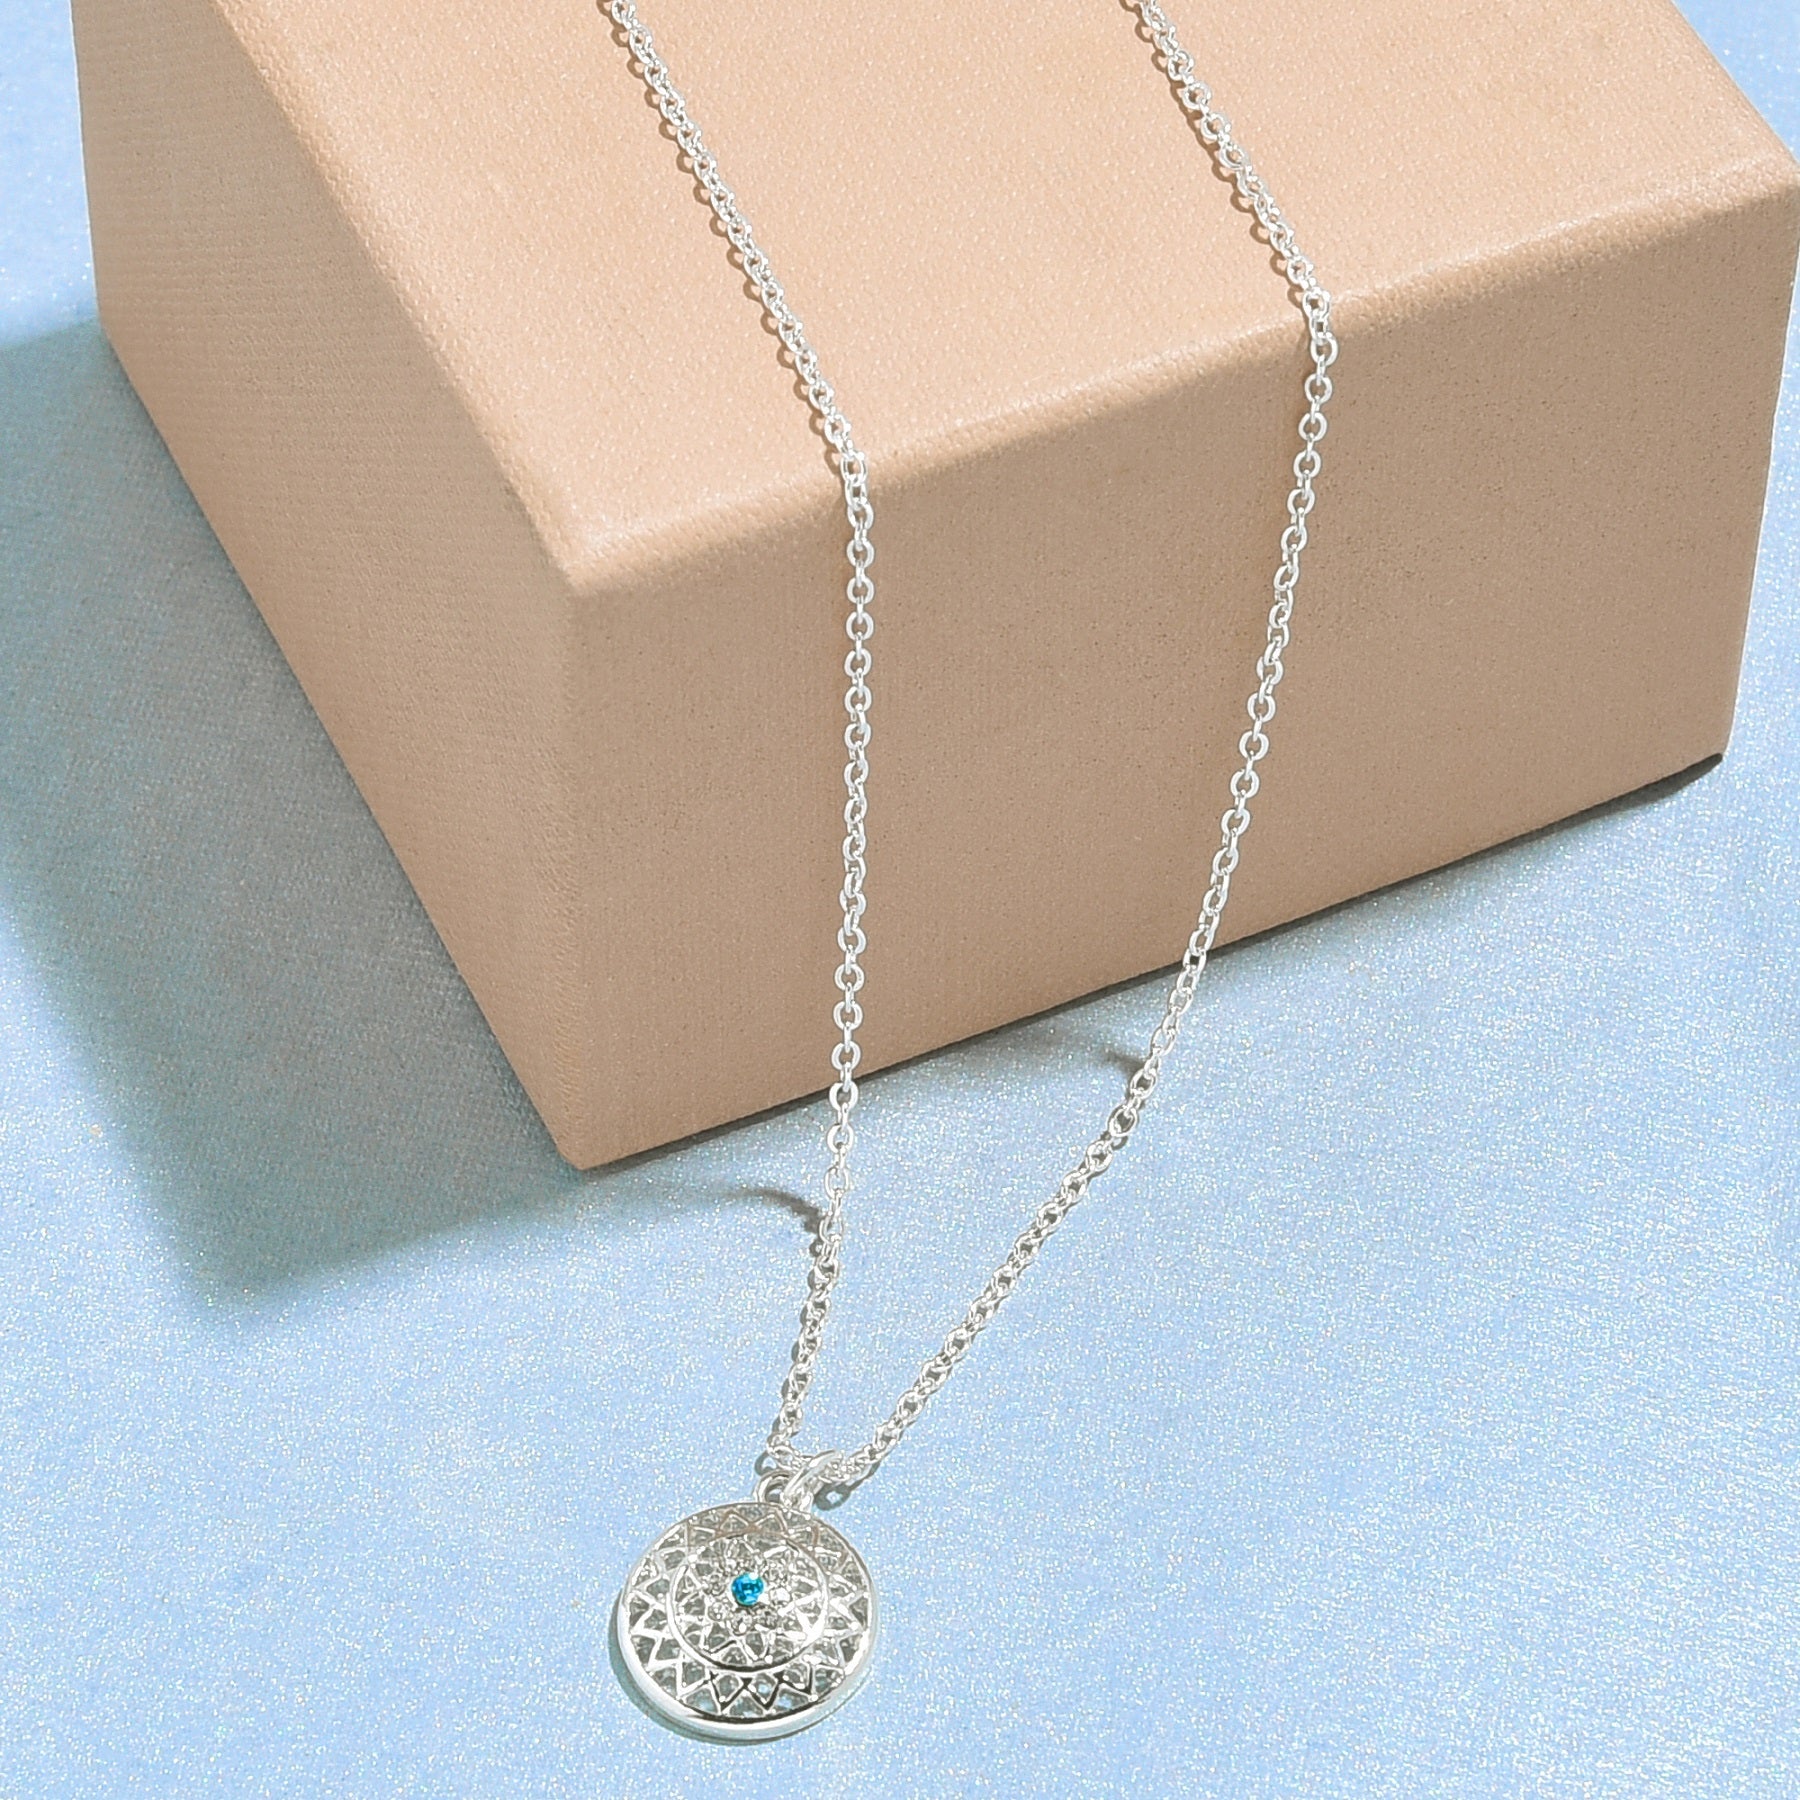 Accessorize London Women's Silver Filigree Turq Stone Pendant Necklace